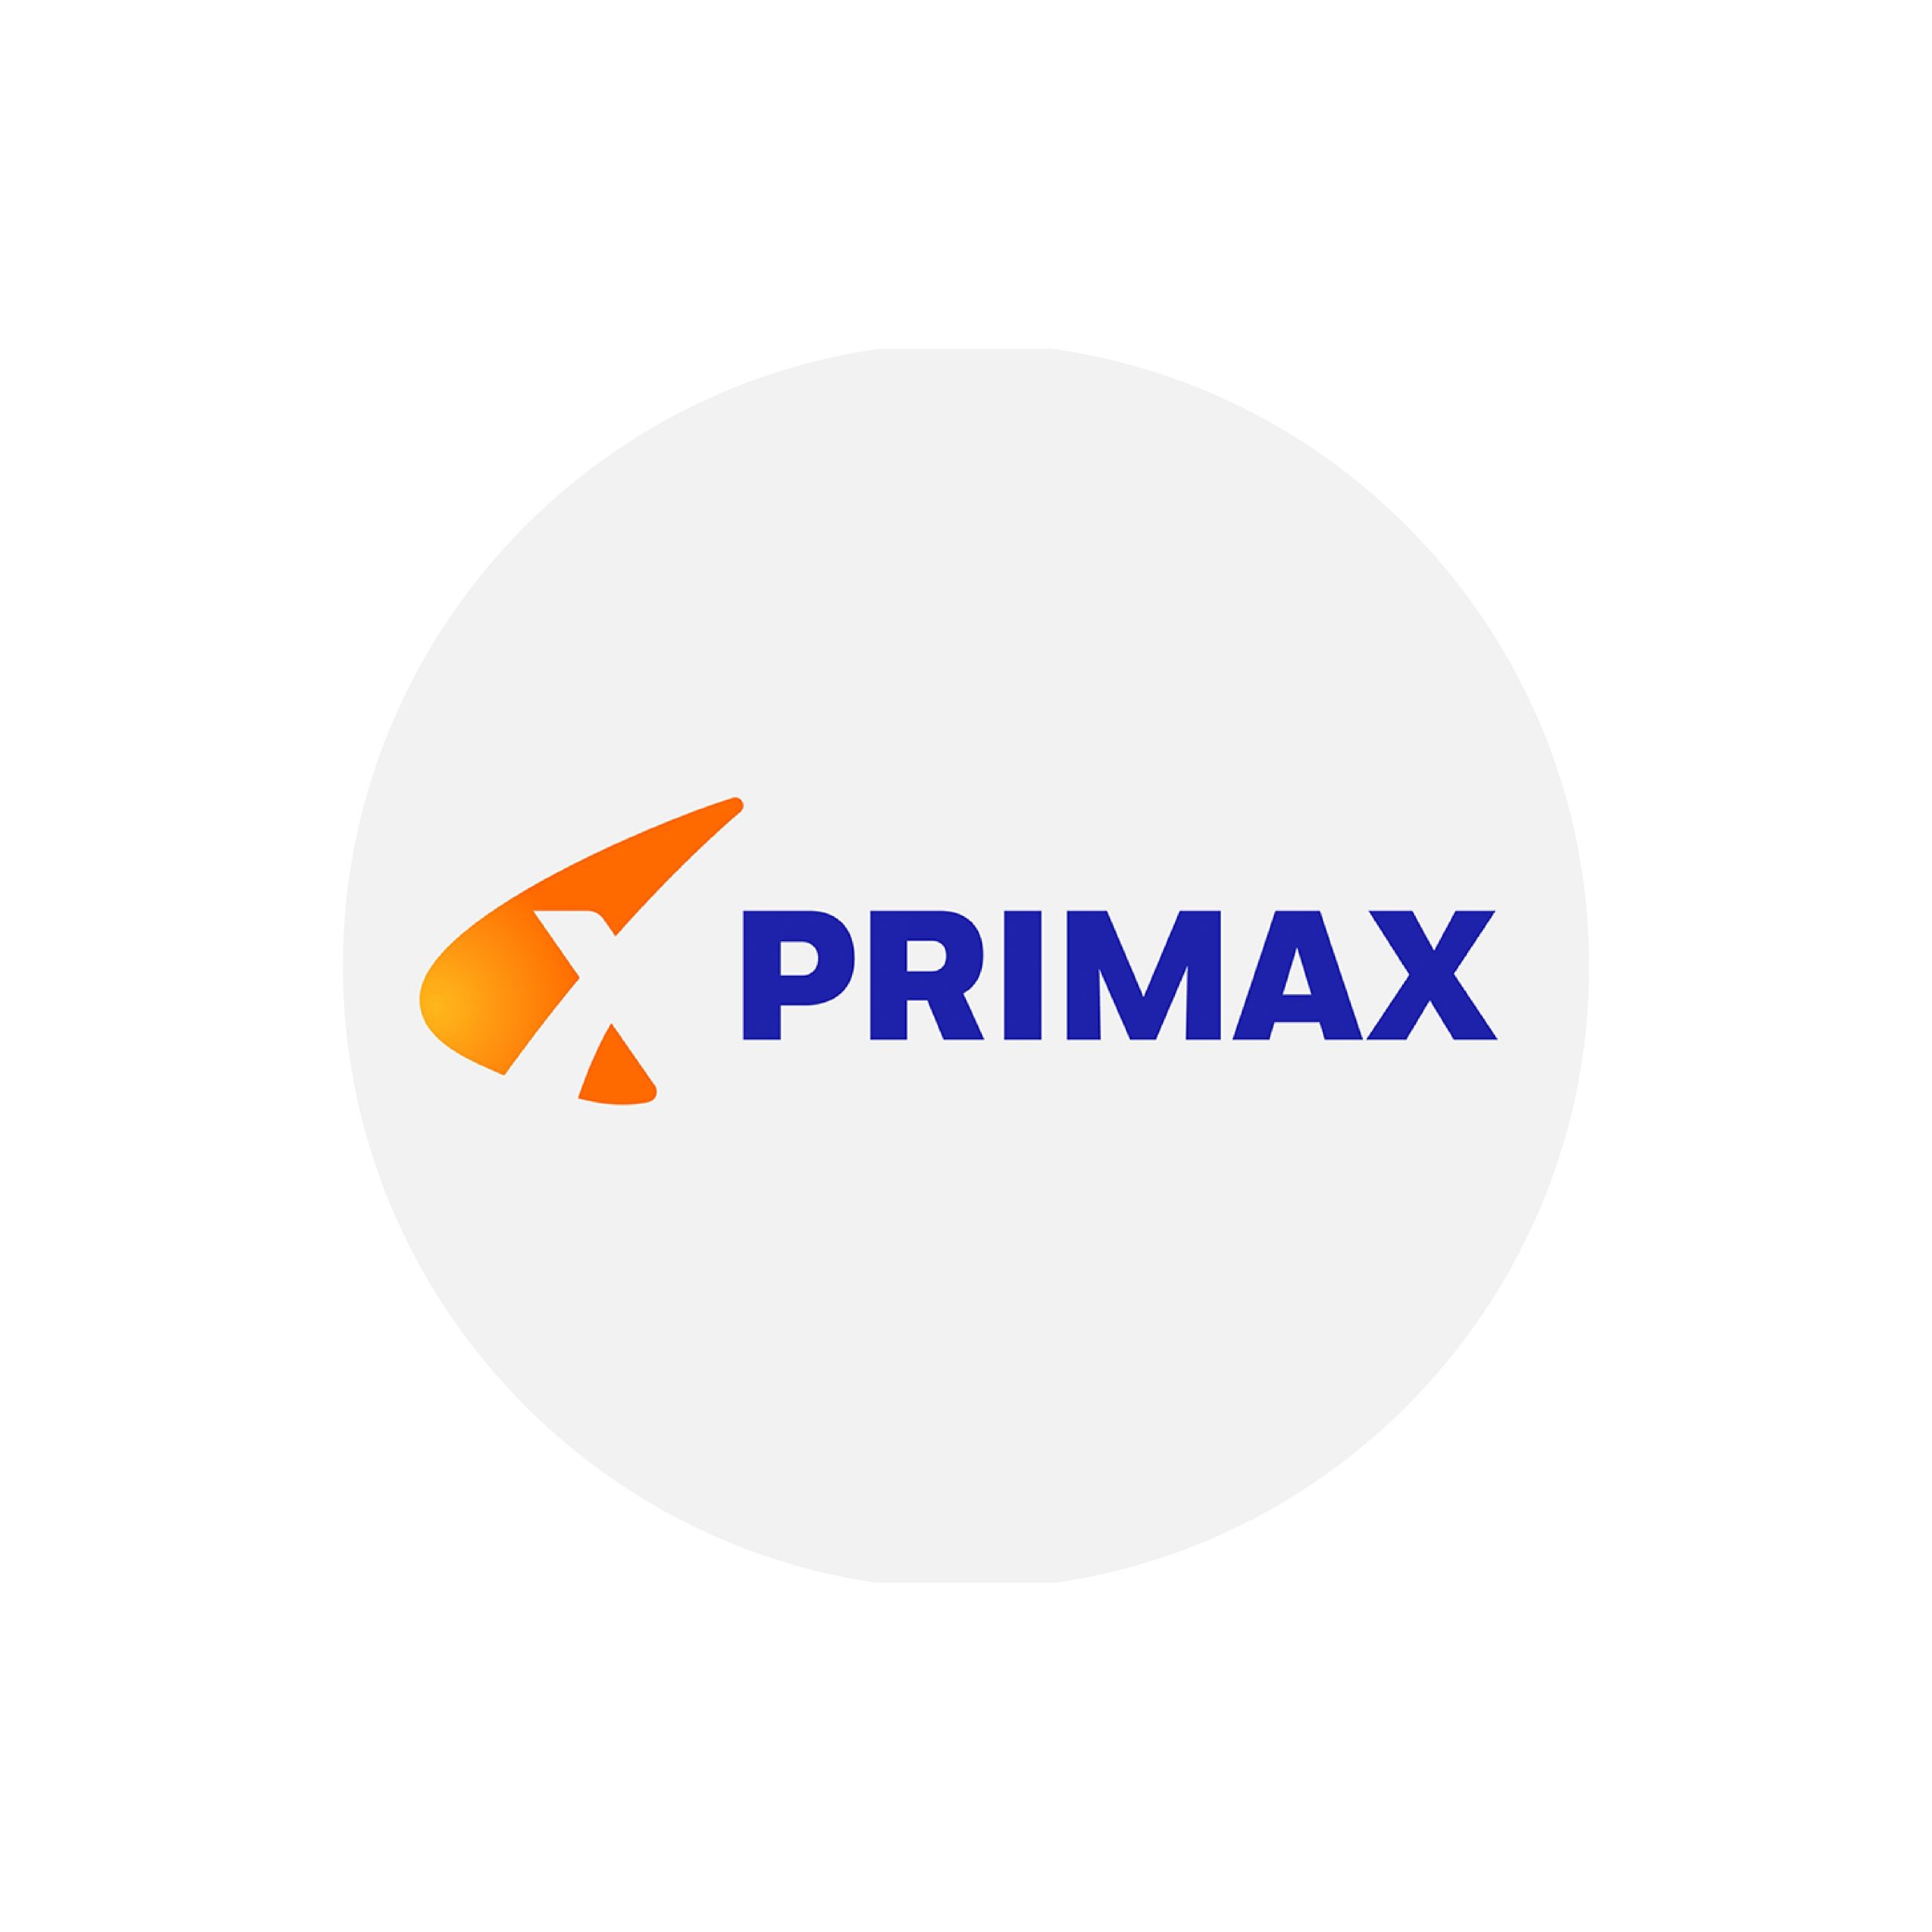 Primax-01